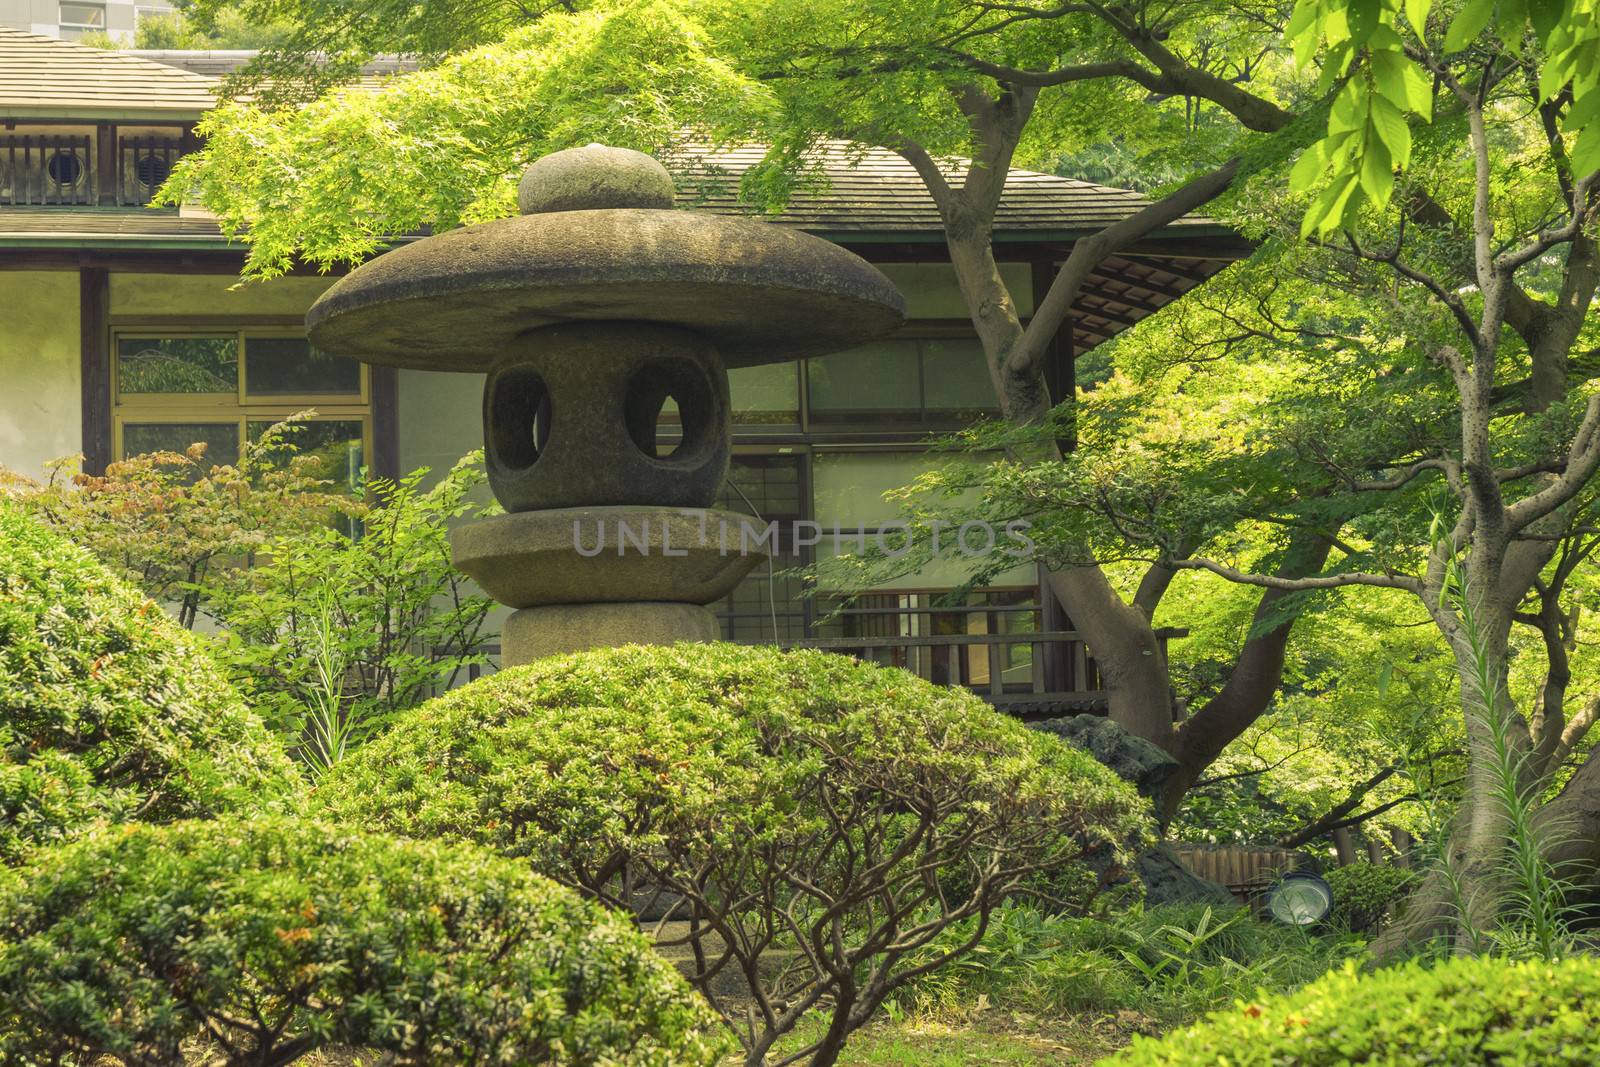 big stone lantern in Japanese zen garden by summer time